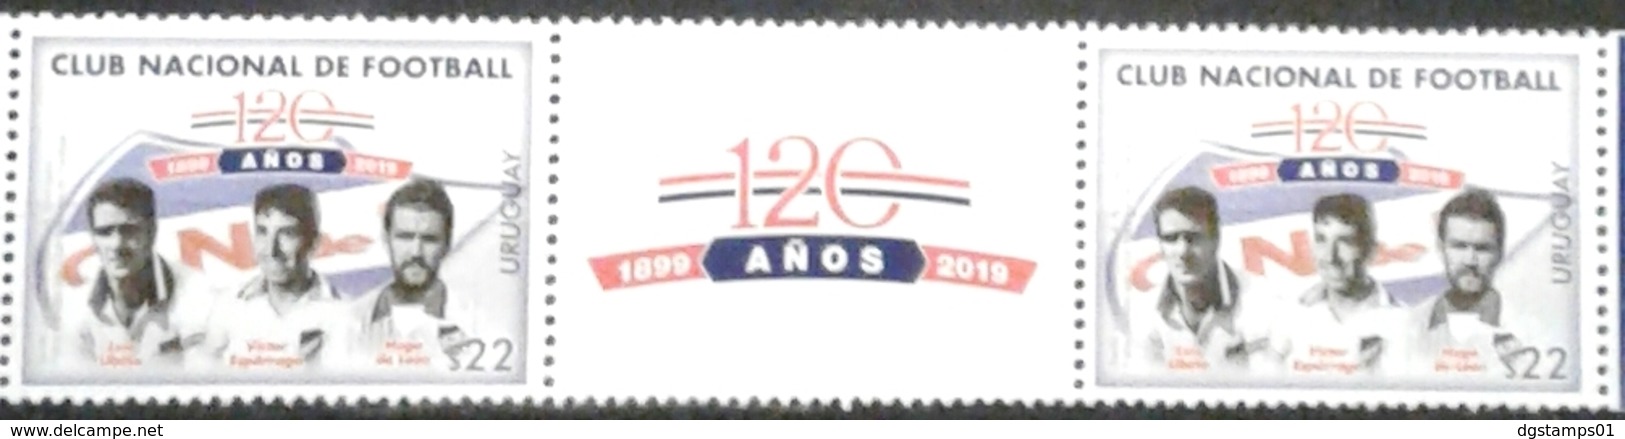 Uruguay 2019 ** 120 Años Club Nacional De Football. L. Ubiña. V. Espárrago. H. De León. - Club Mitici